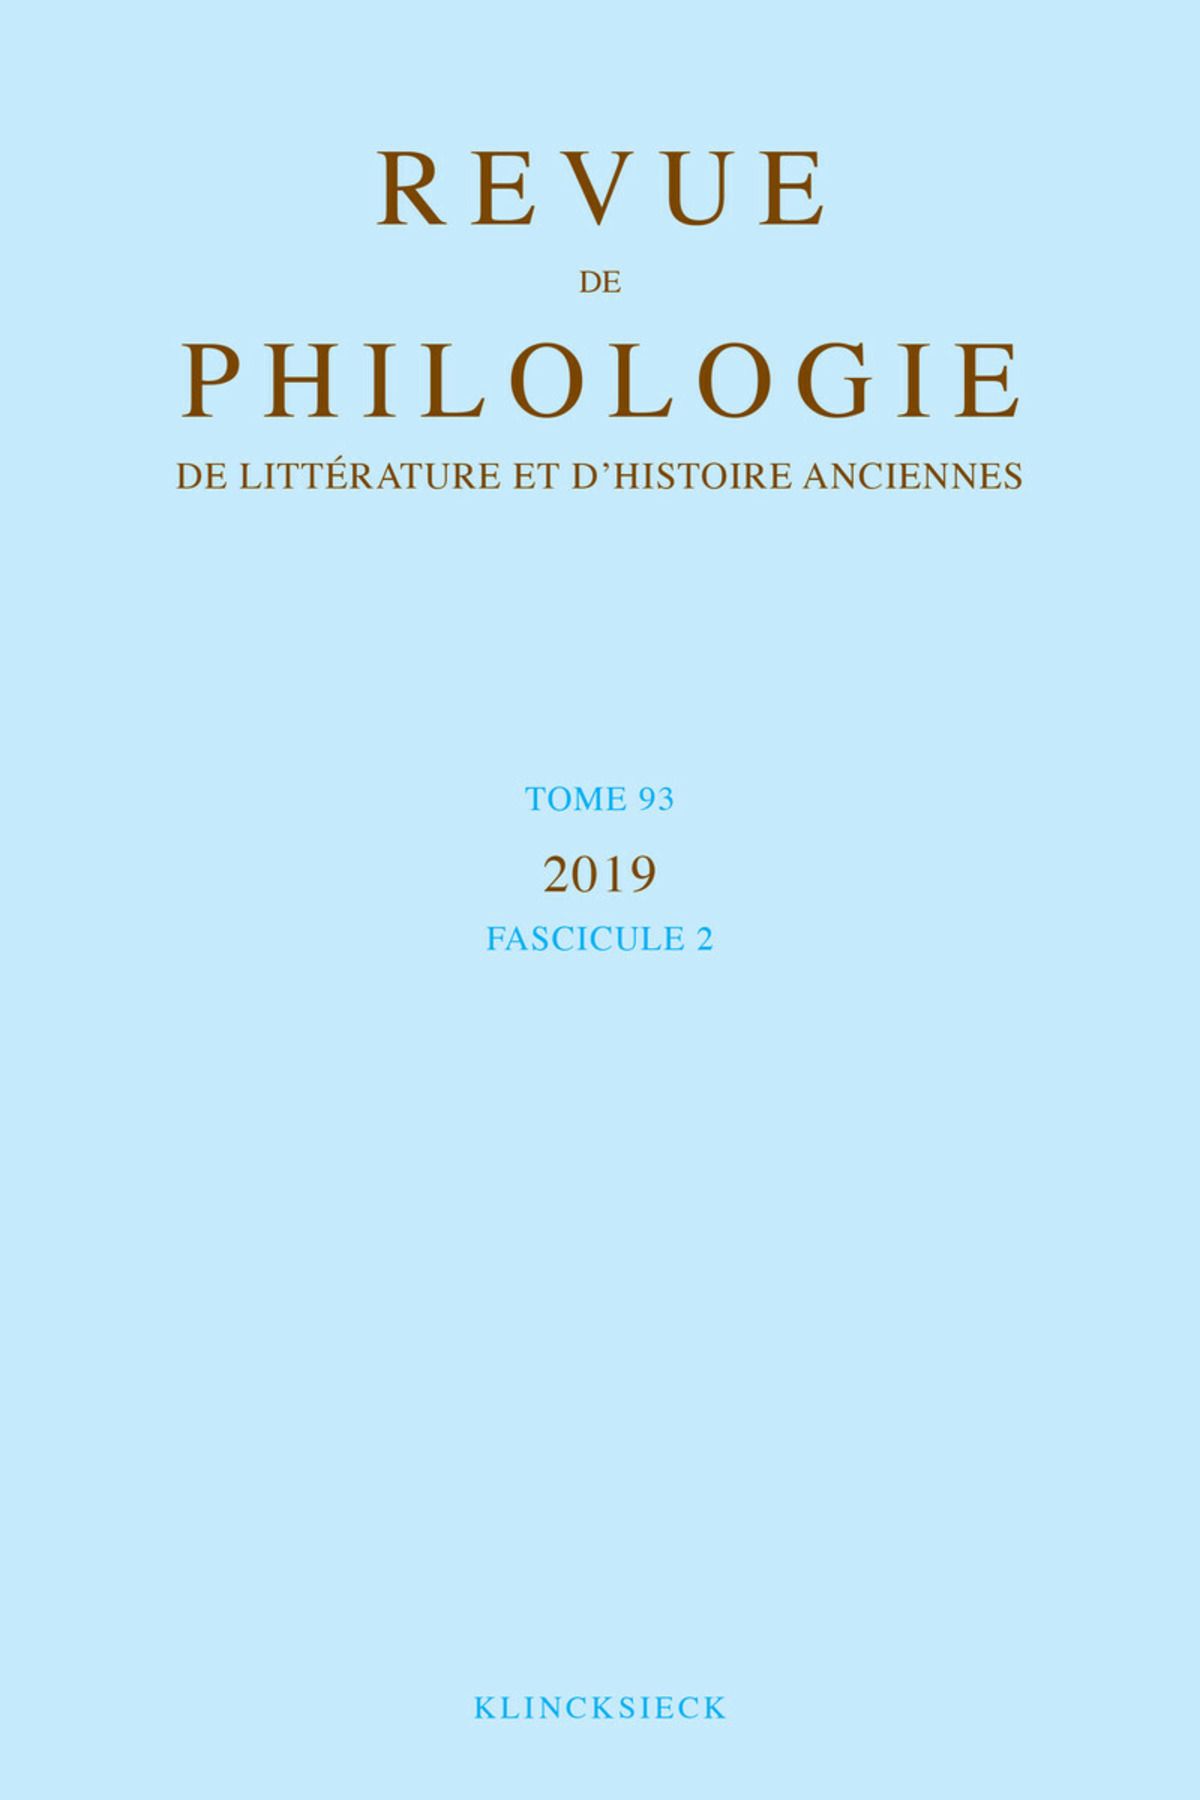 Revue de philologie, de littérature et d'histoire anciennes volume 93-2